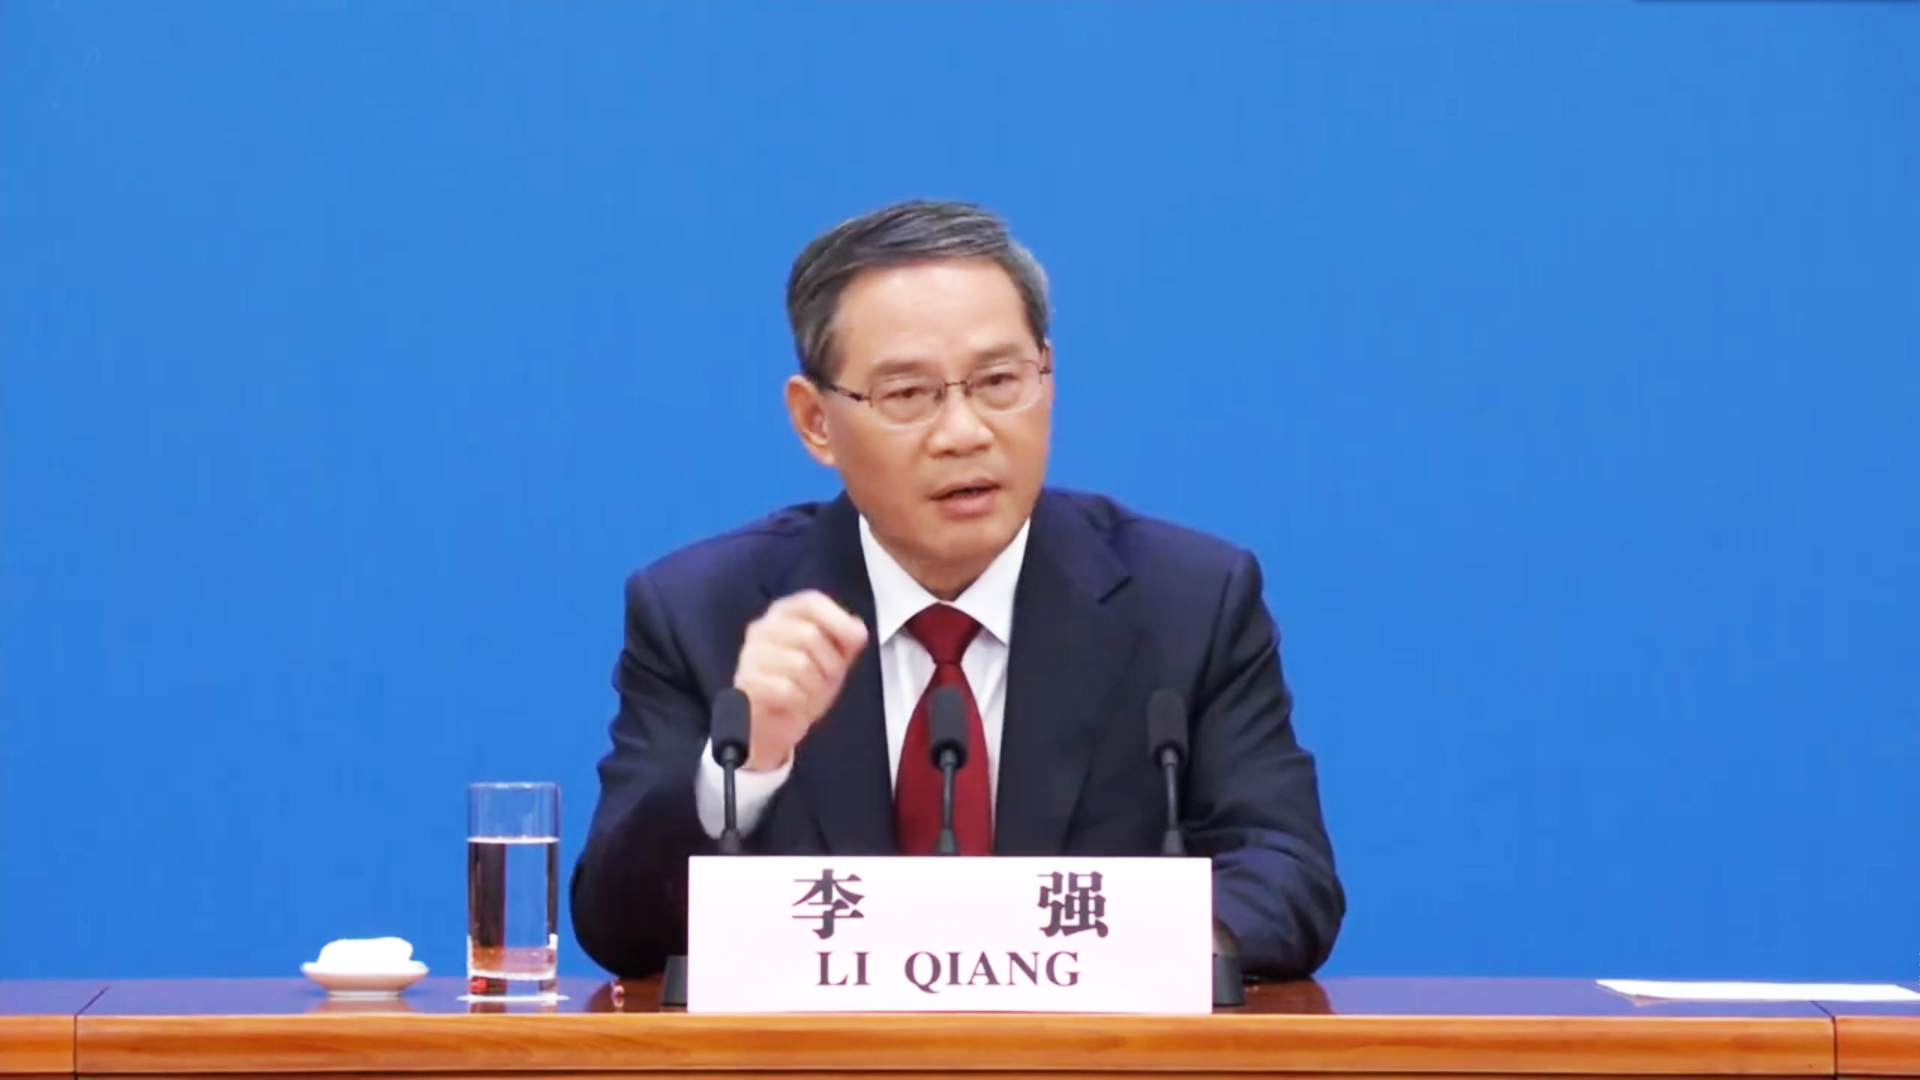 李强总理谈新一届政府施政目标